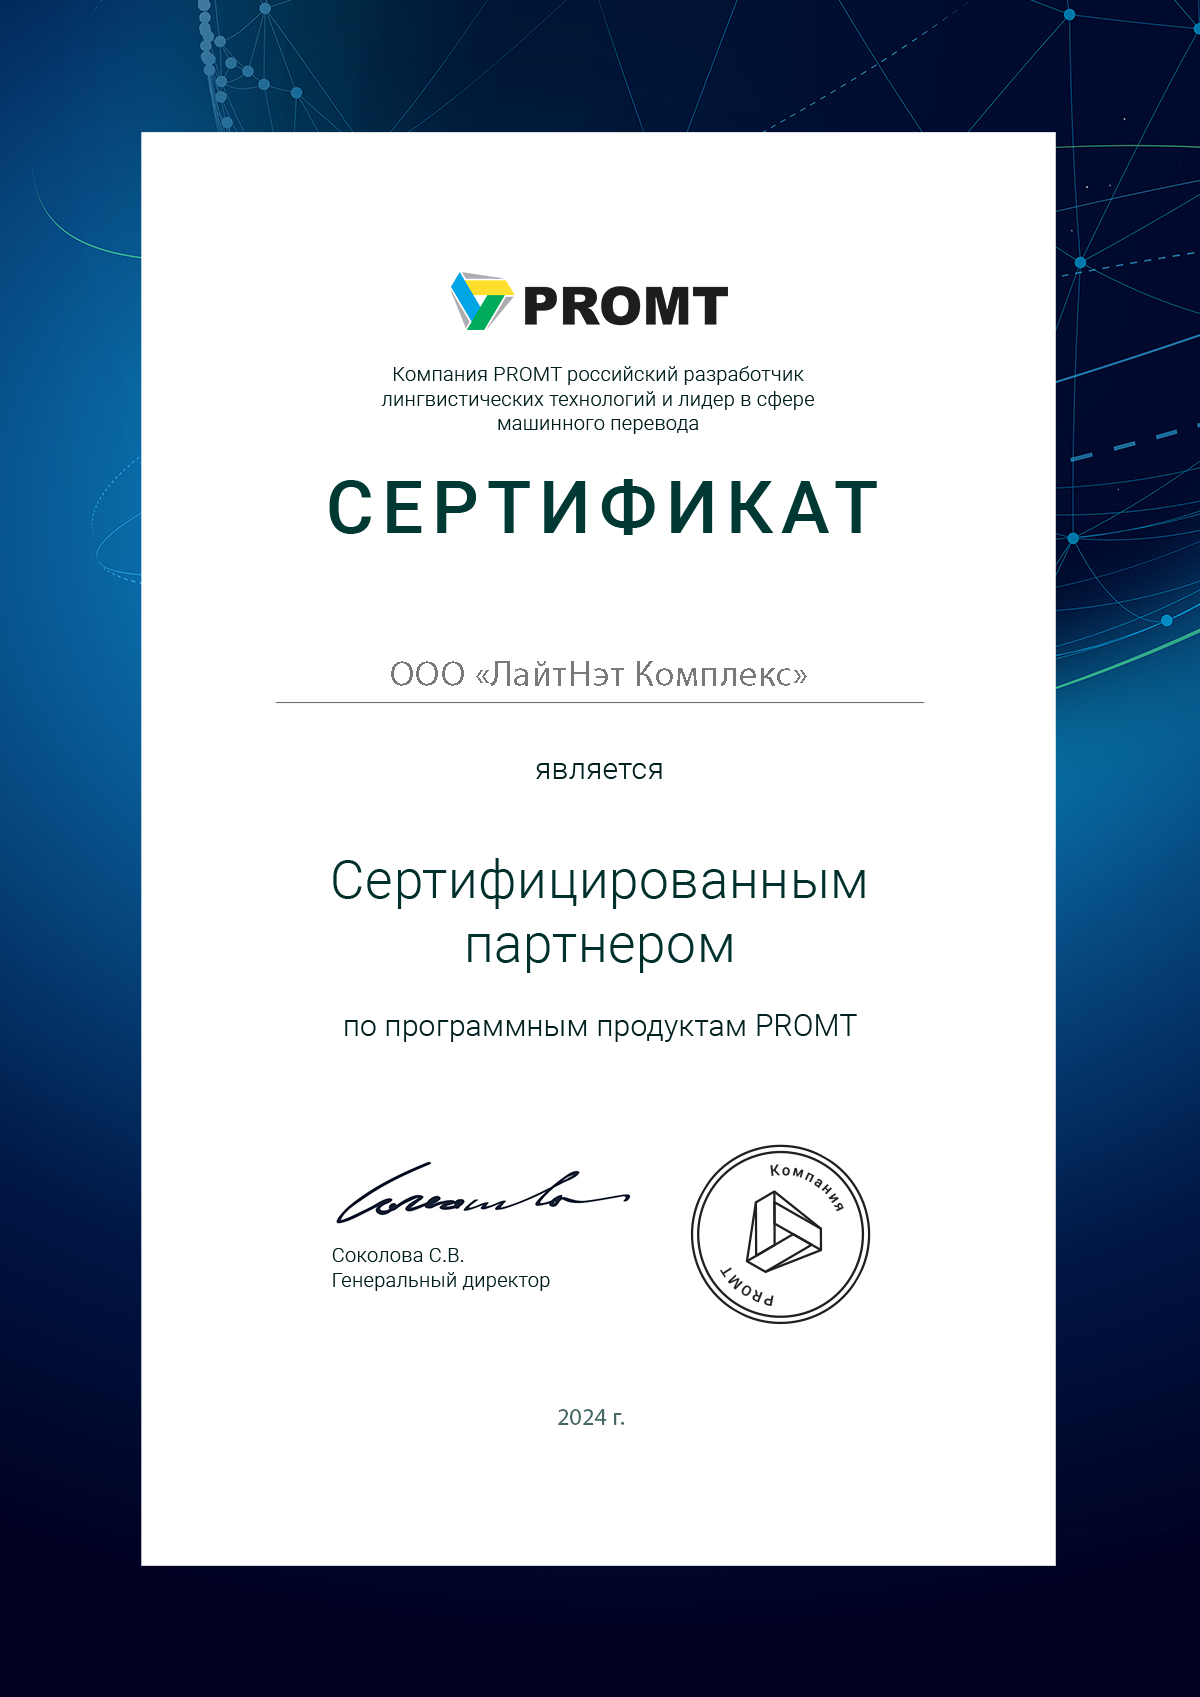 Promt - сертифицированный партнер 2024